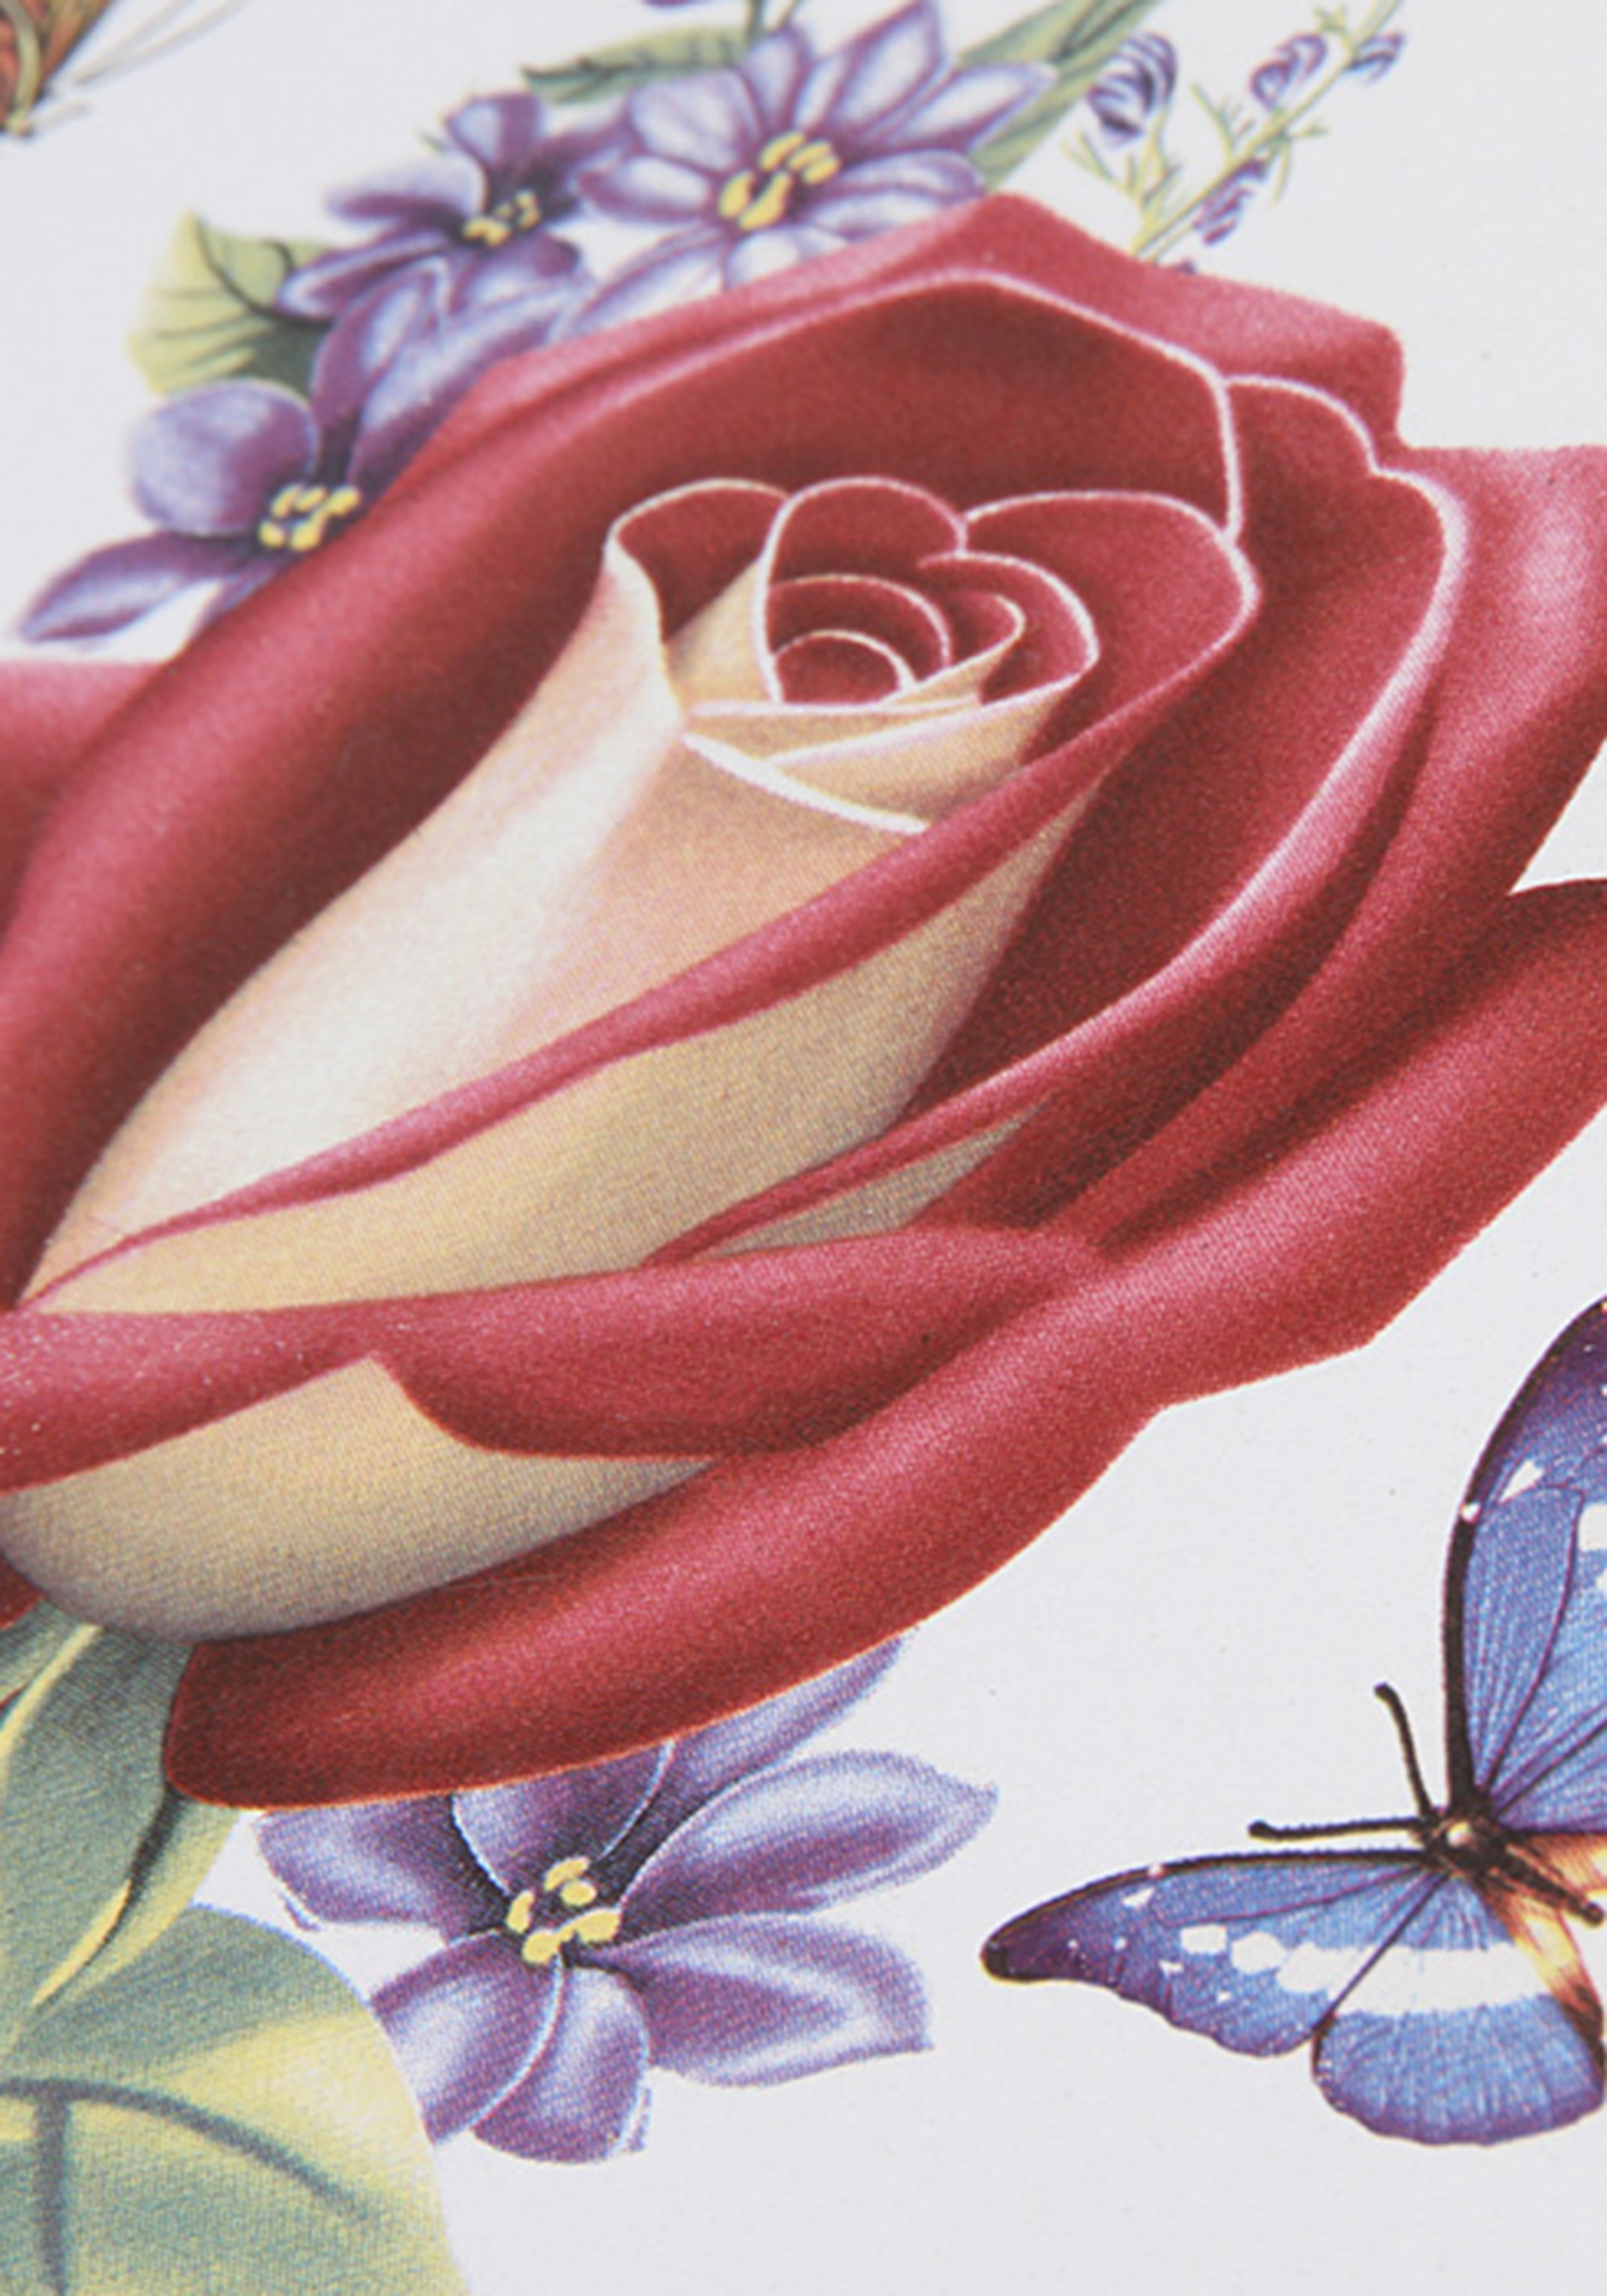 Форма для запекания "Королевская роза" Pomi D'oro - фото 4